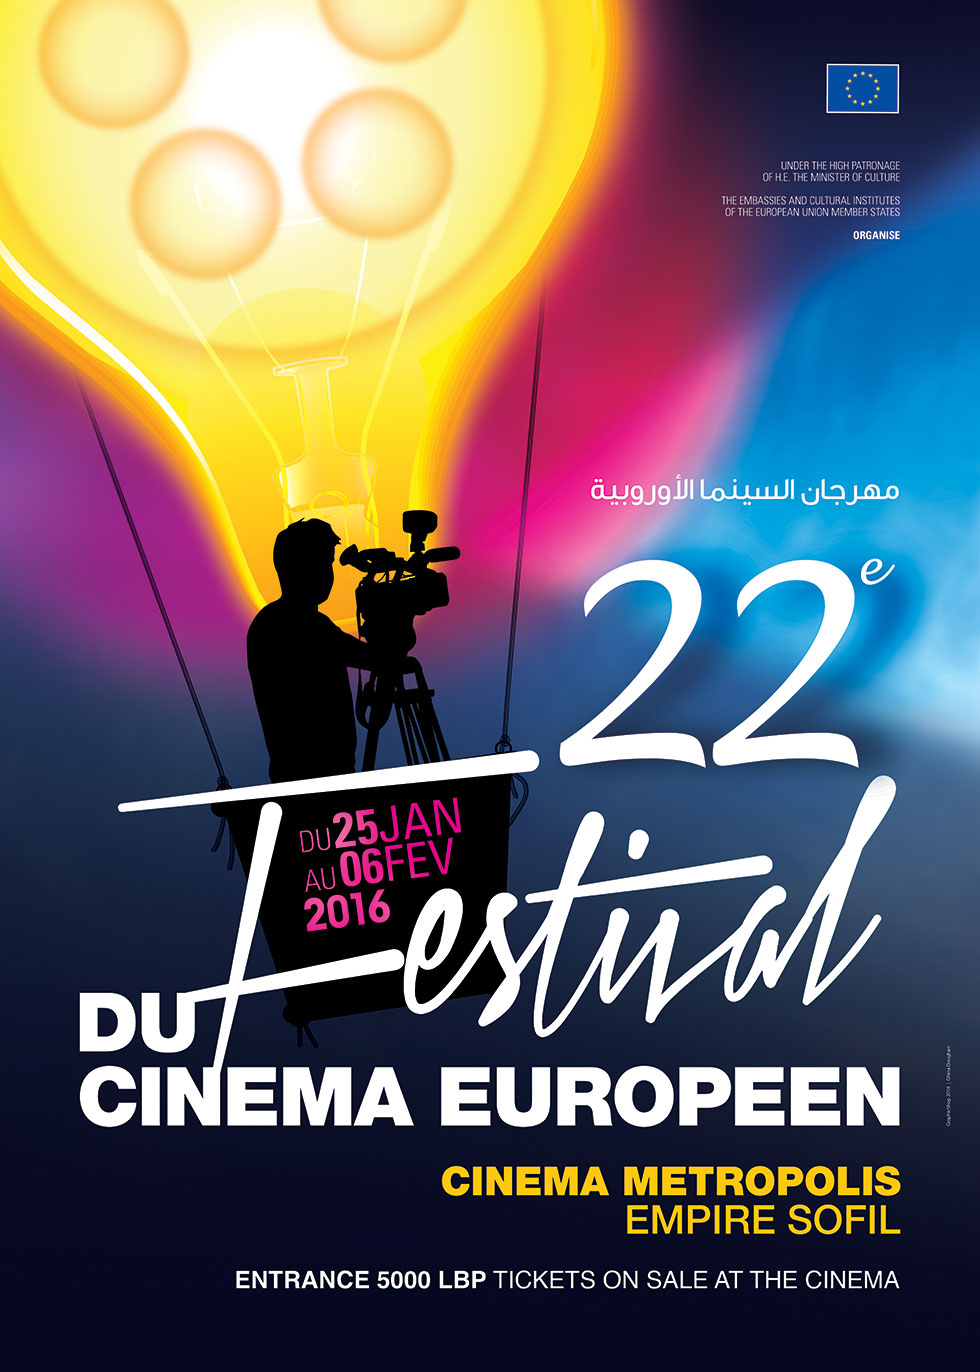 Festival Du Cinema Europeen in Beirut, Lebanon